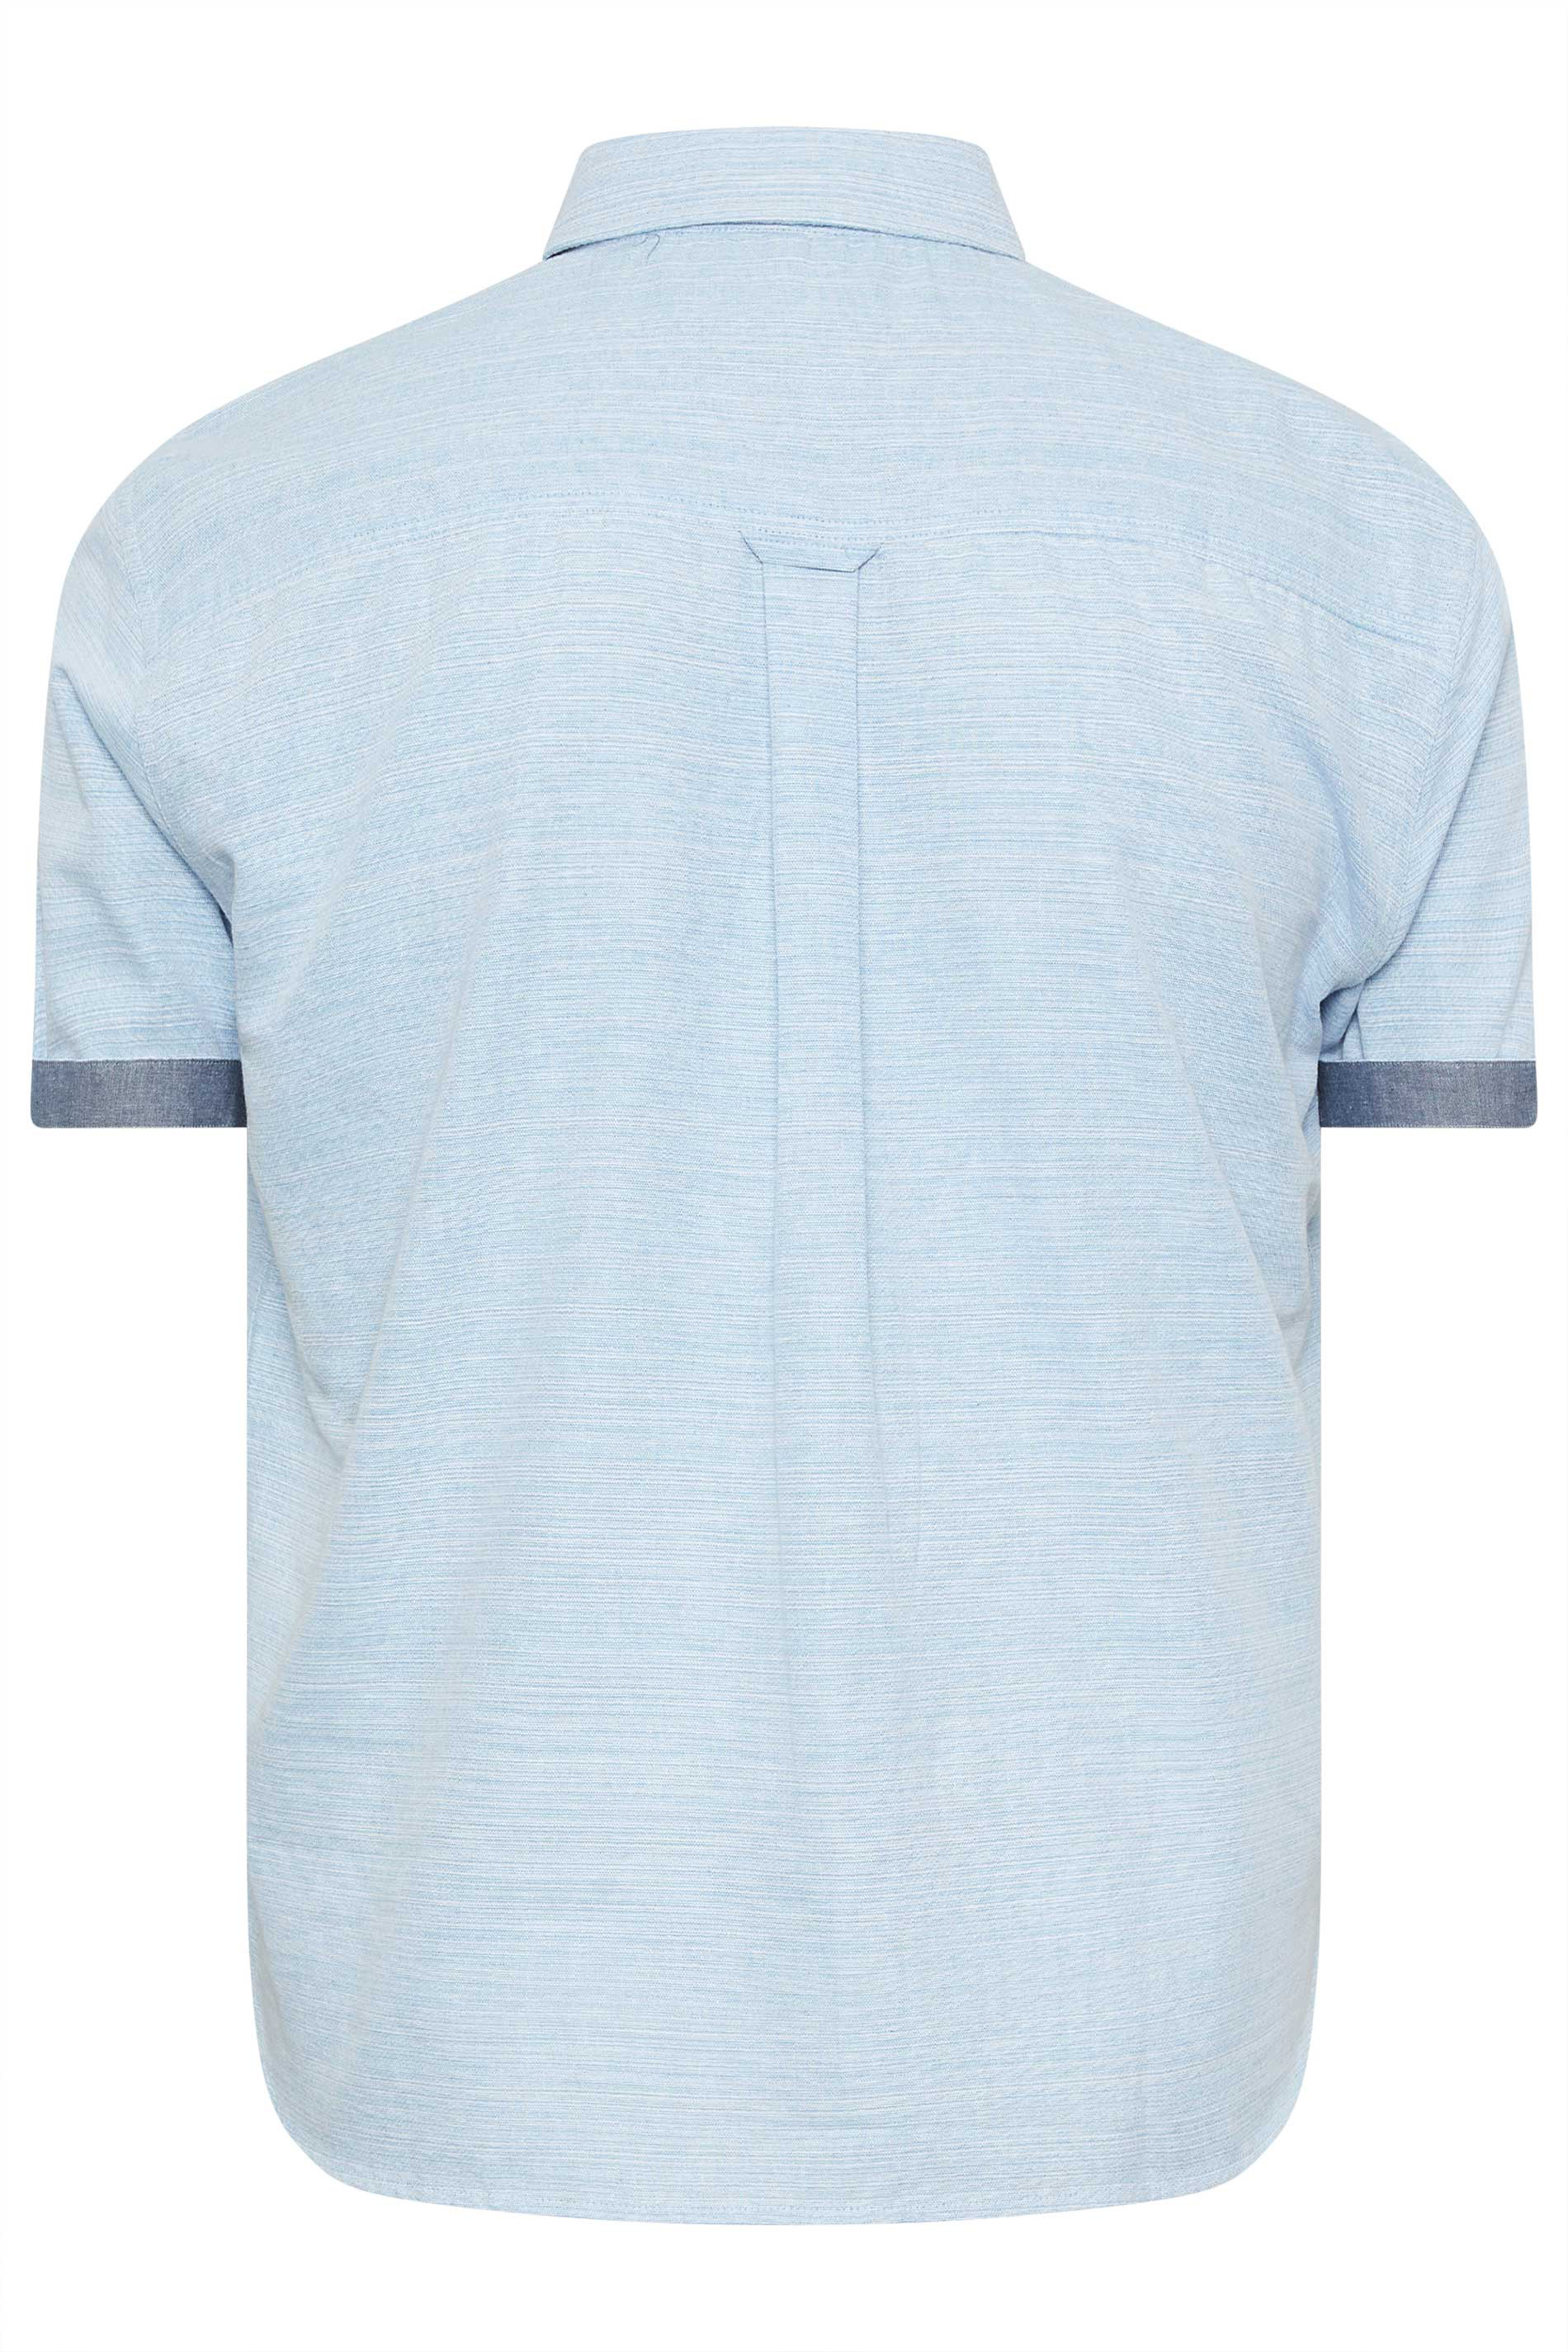 BadRhino Big & Tall Blue Slub Shirt | BadRhino 3